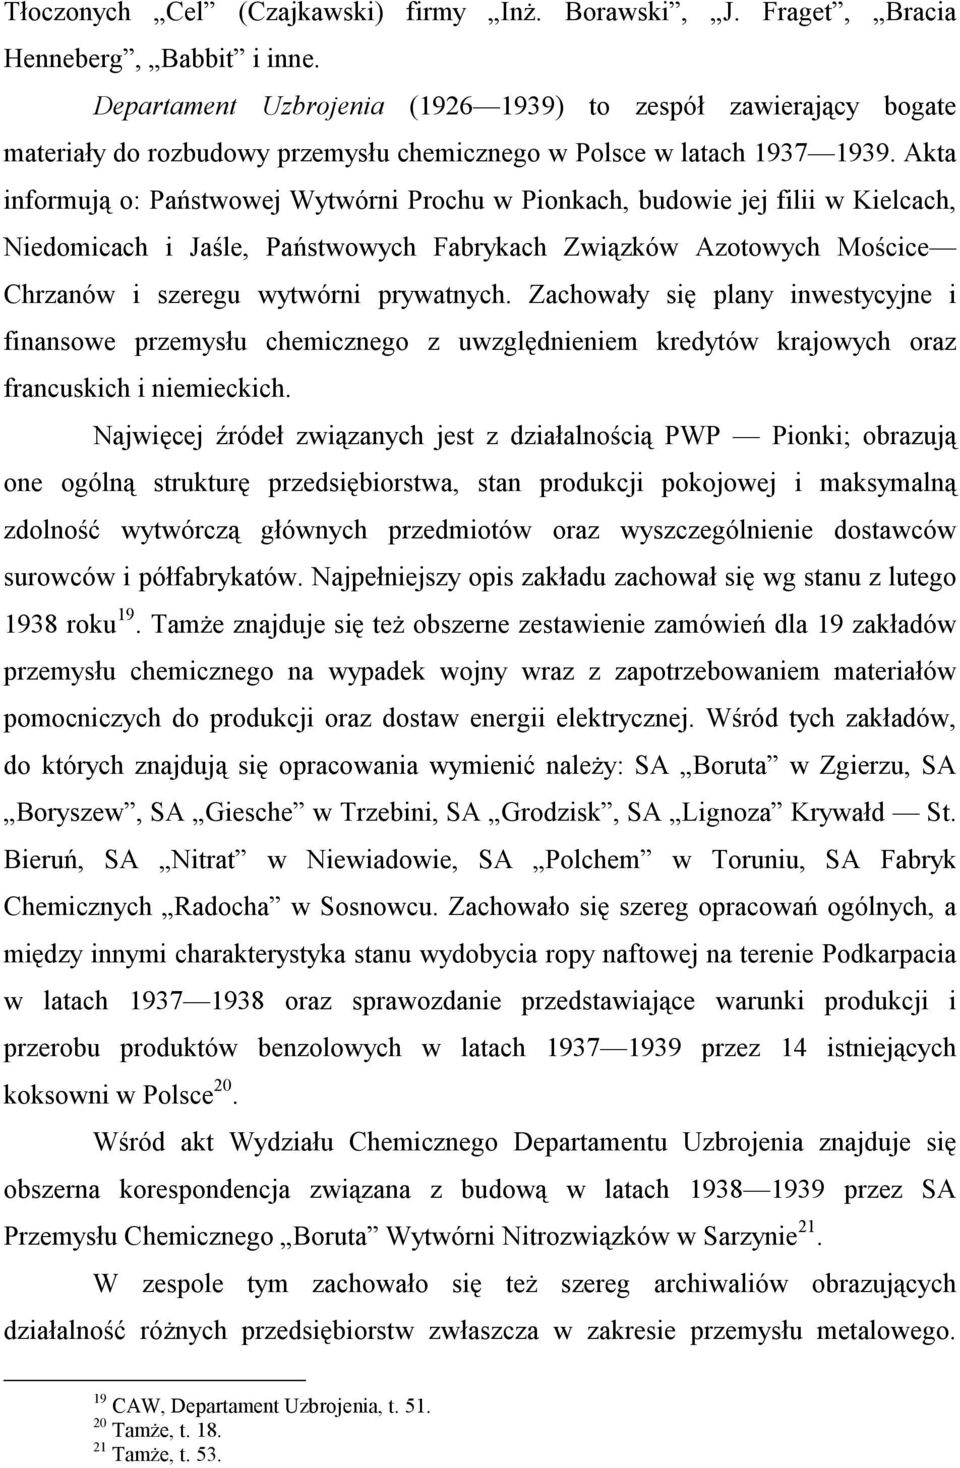 Akta informują o: Państwowej Wytwórni Prochu w Pionkach, budowie jej filii w Kielcach, Niedomicach i Jaśle, Państwowych Fabrykach Związków Azotowych Mościce Chrzanów i szeregu wytwórni prywatnych.